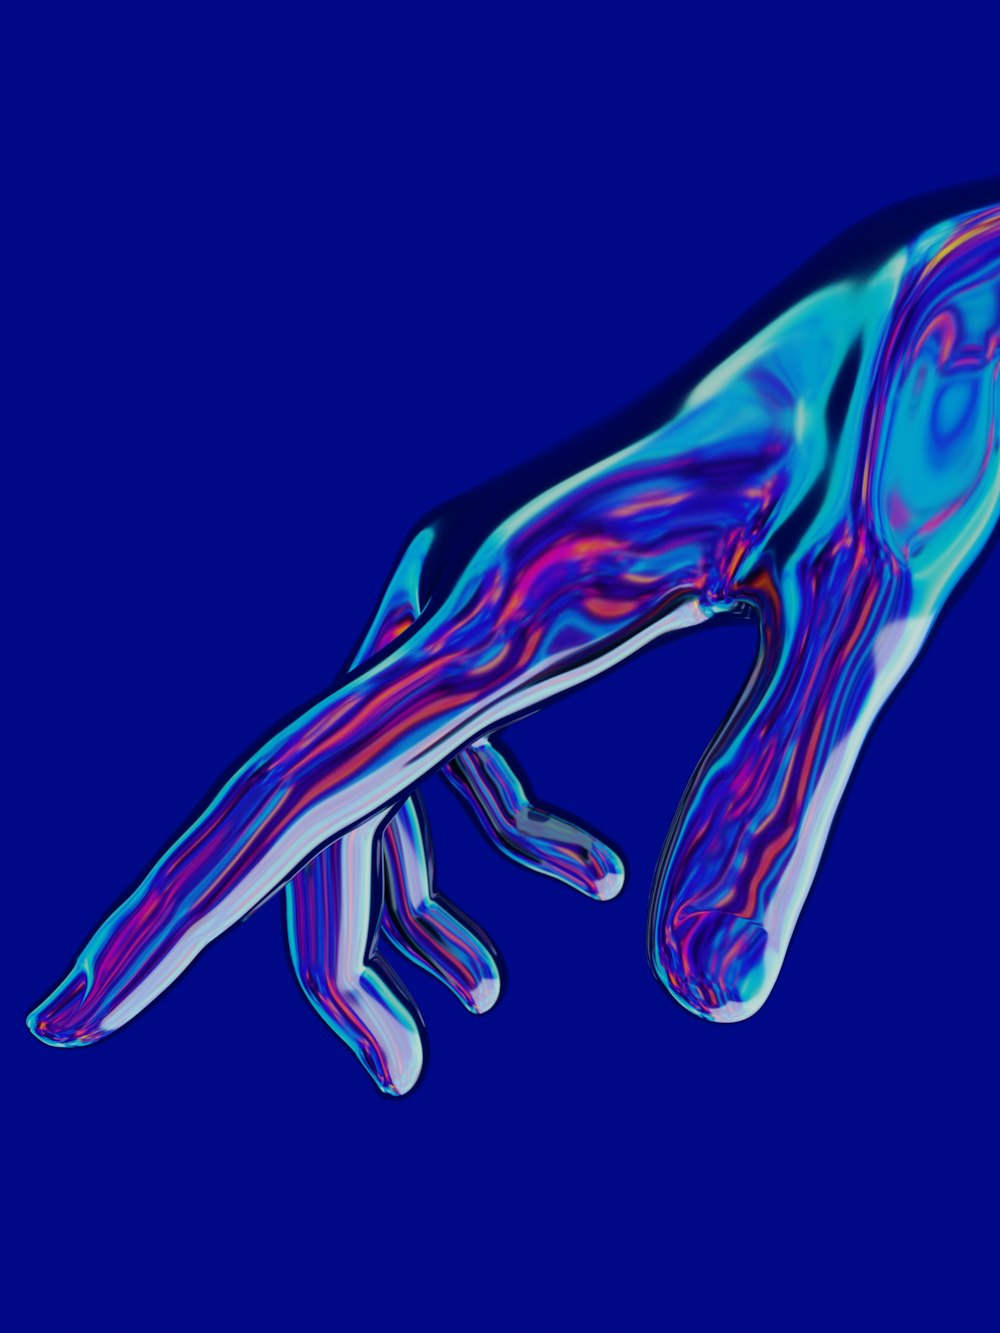 un'immagine blu e viola della mano di una persona